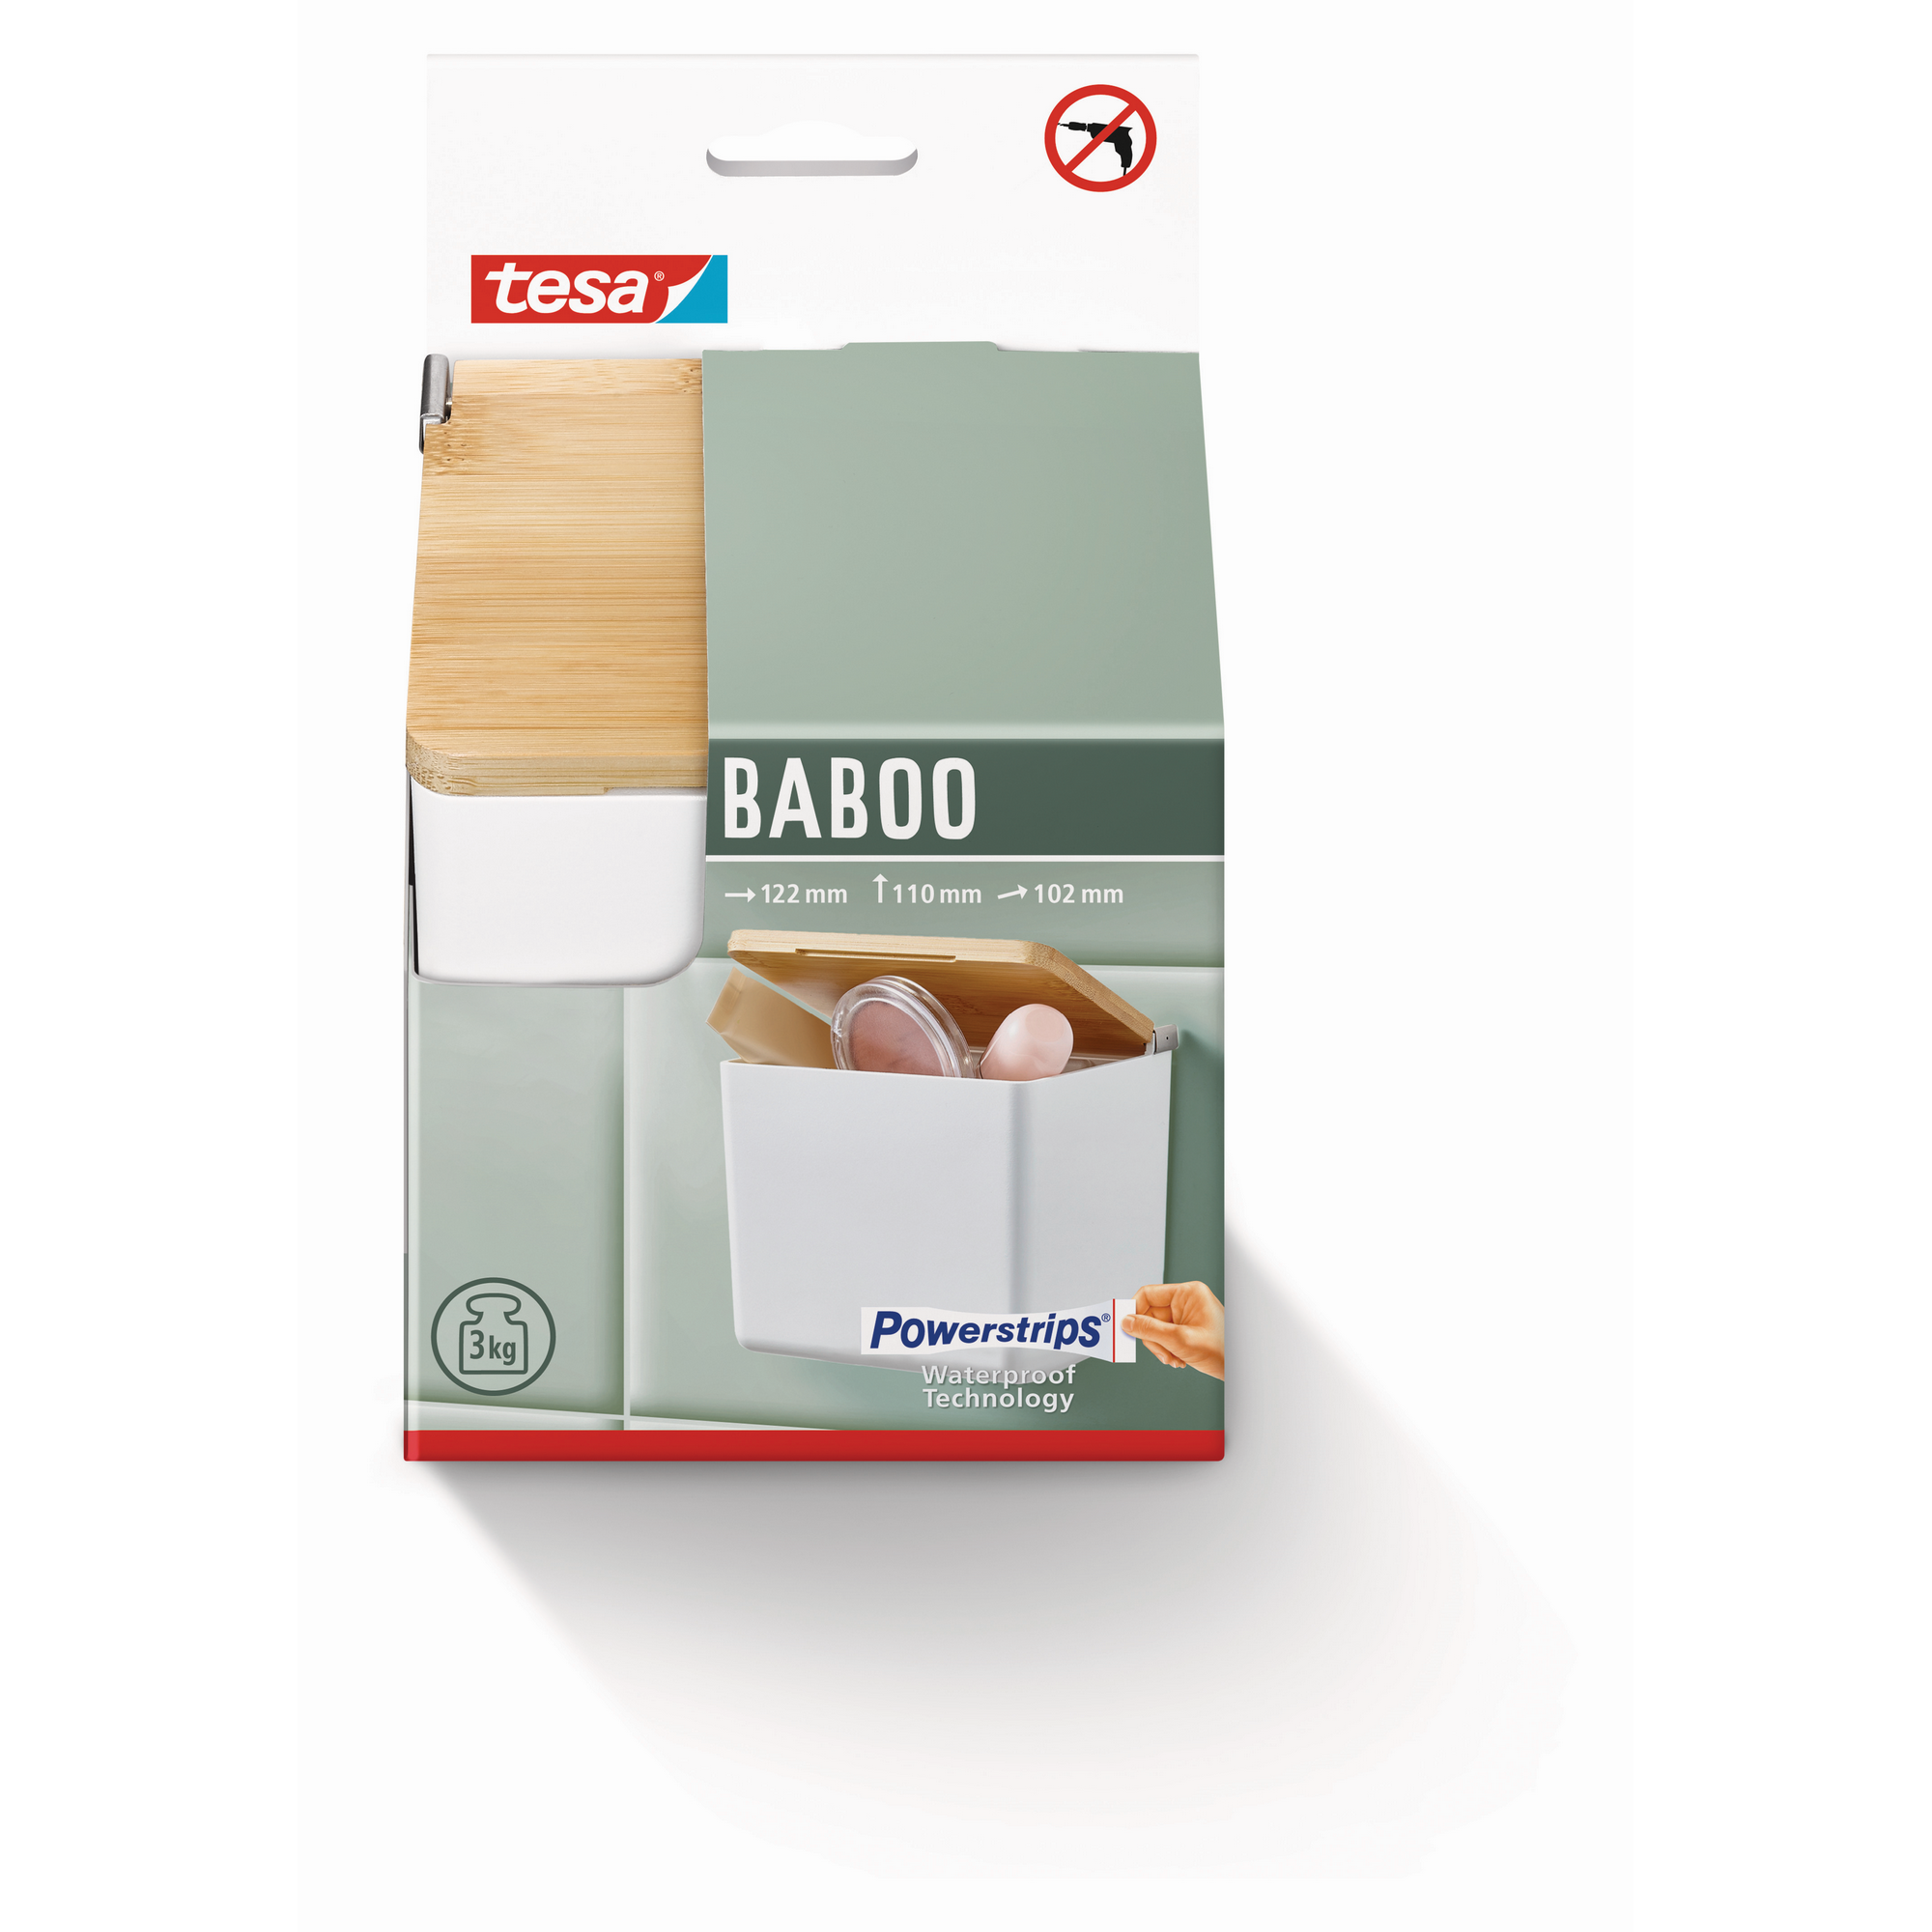 Aufbewahrungsbox 'Baboo' klein mattweiß 12,2 x 11 x 10,2 cm mit Bambusdeckel + product picture